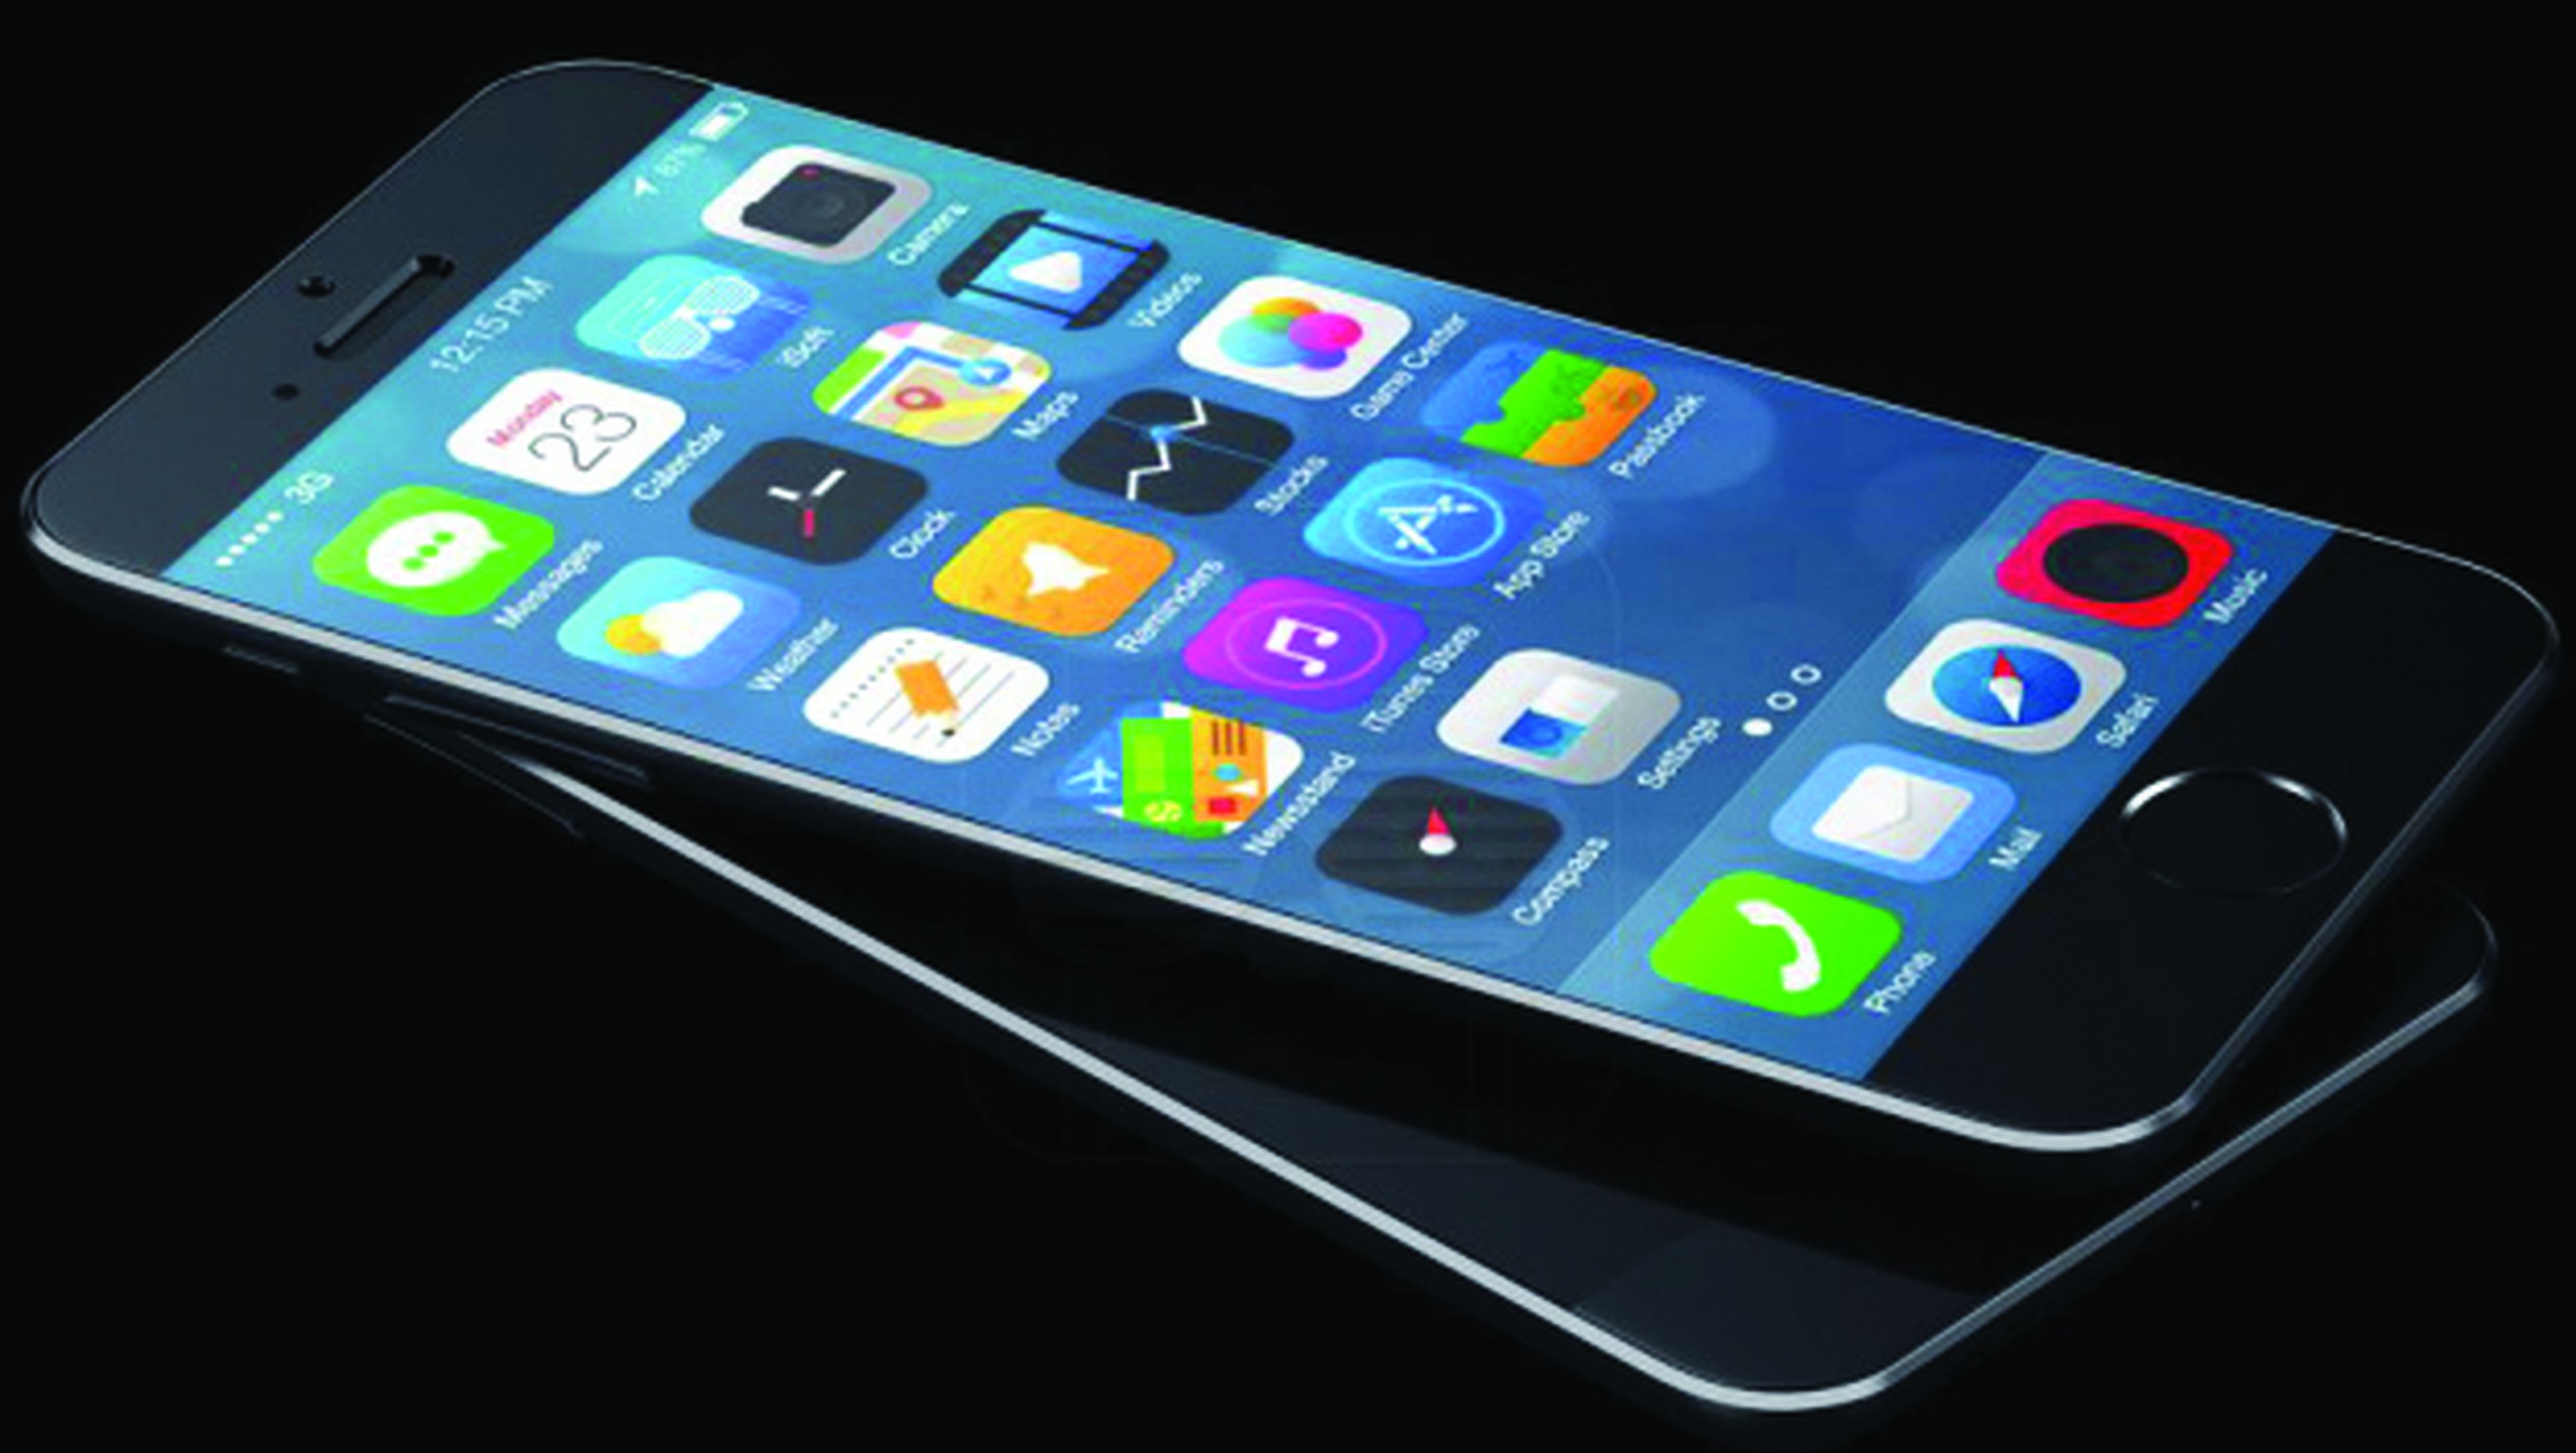 Fabricación del iPhone 6 en problemas por su delgado grosor